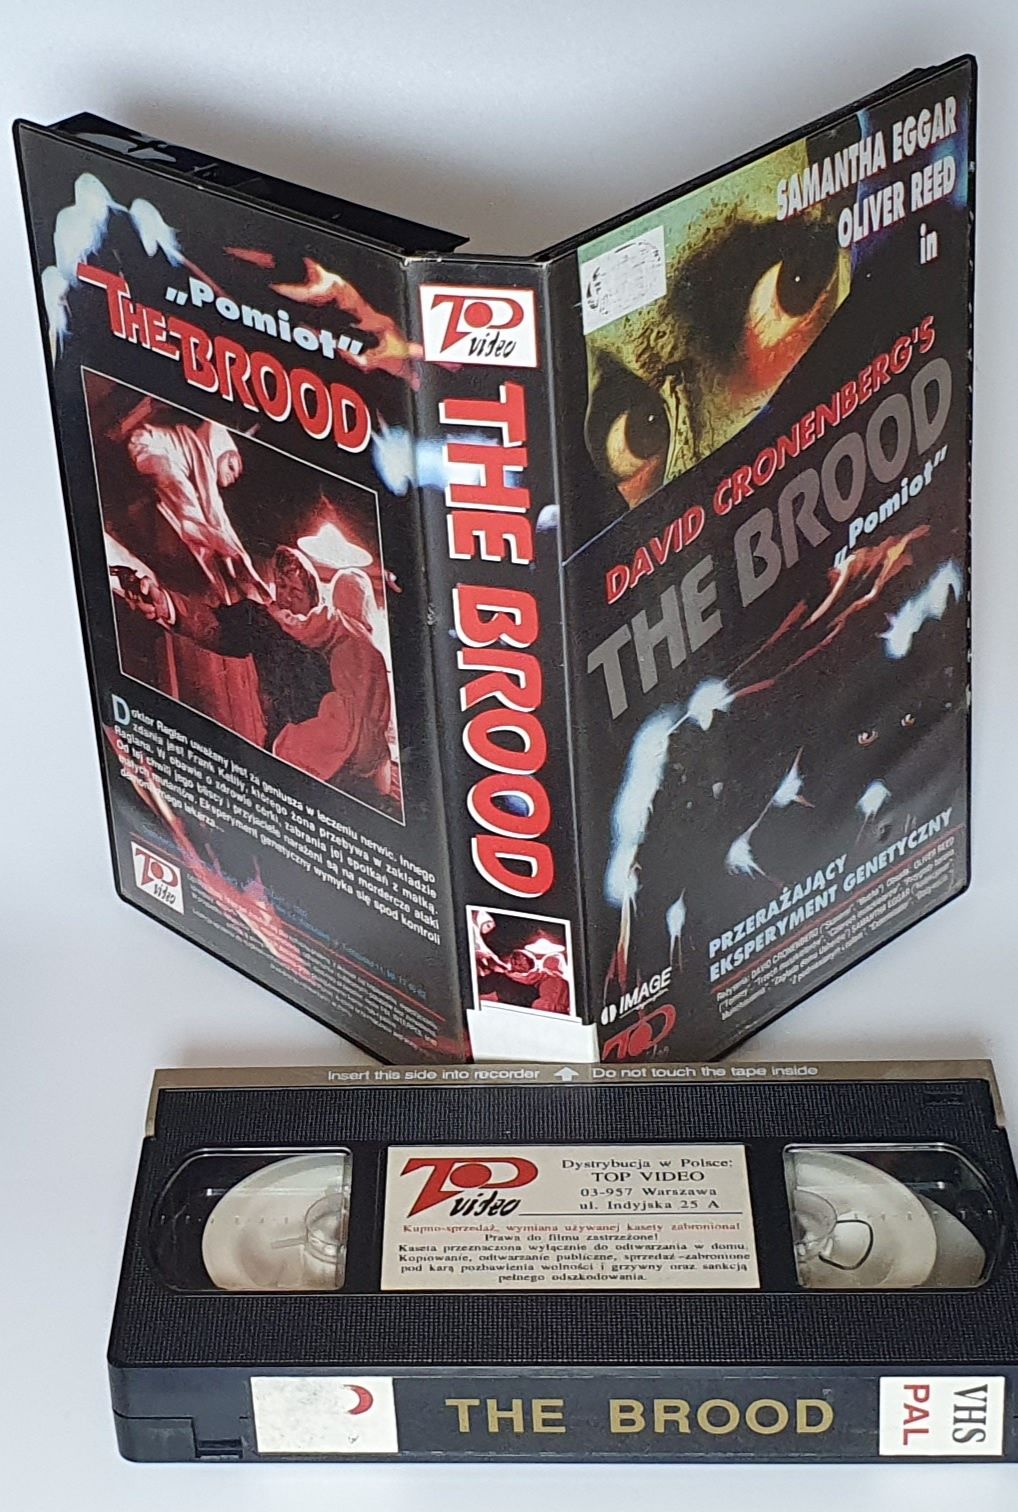 Zestaw 6 kaset VHS "Kosiarz umysłów" "Wykonać wyrok"